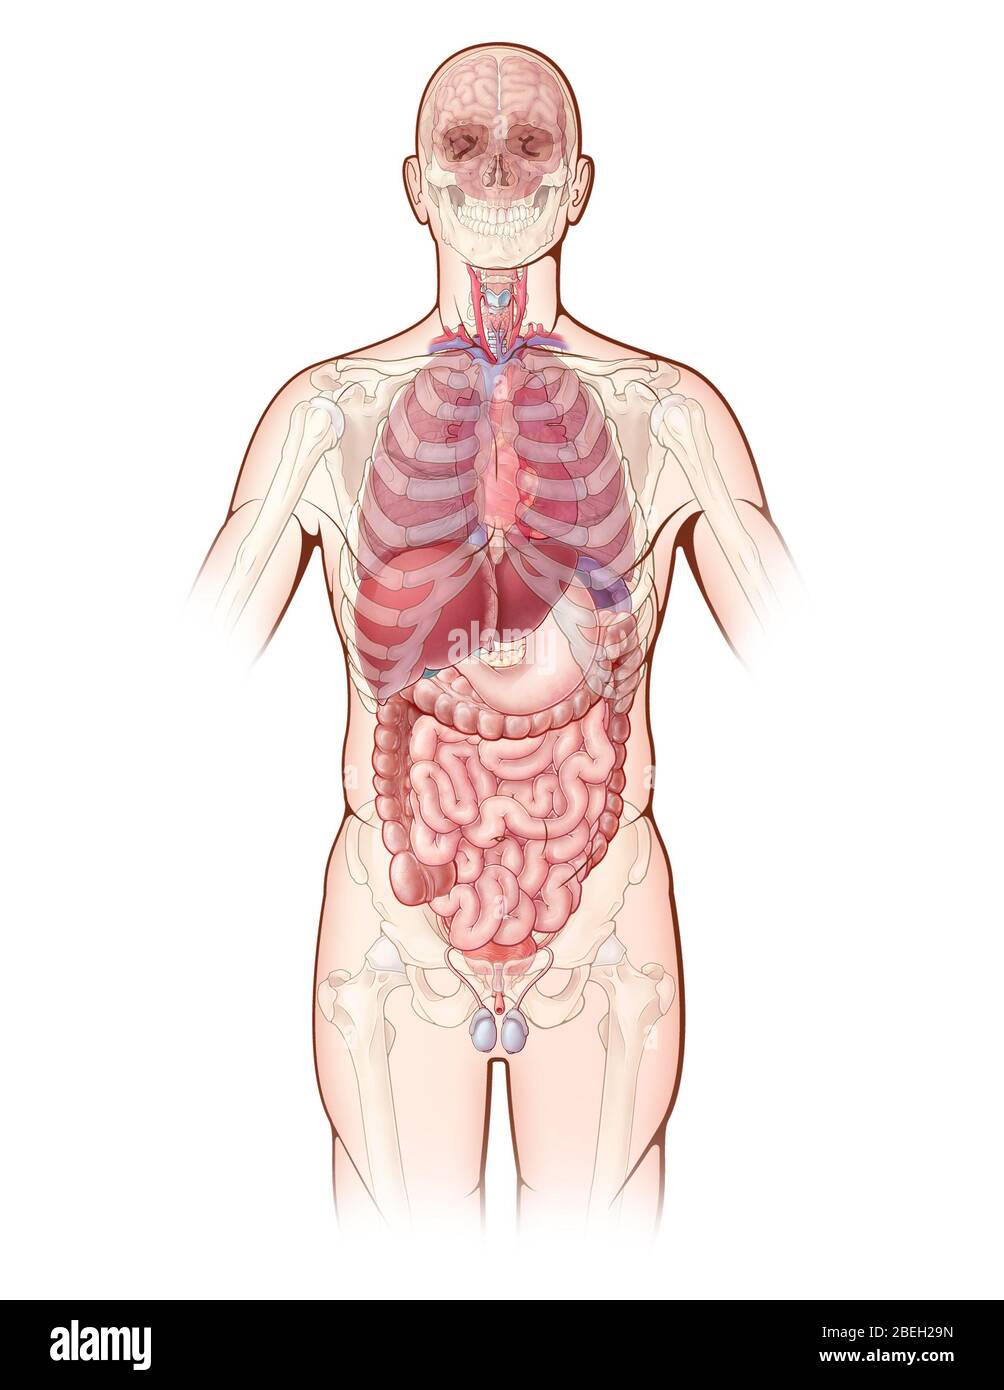 Eine Illustration, die die wichtigsten Organe im menschlichen Körper darstellt, sowie eine entwirrte Ansicht der Knochen des Skeletts. Stockfoto